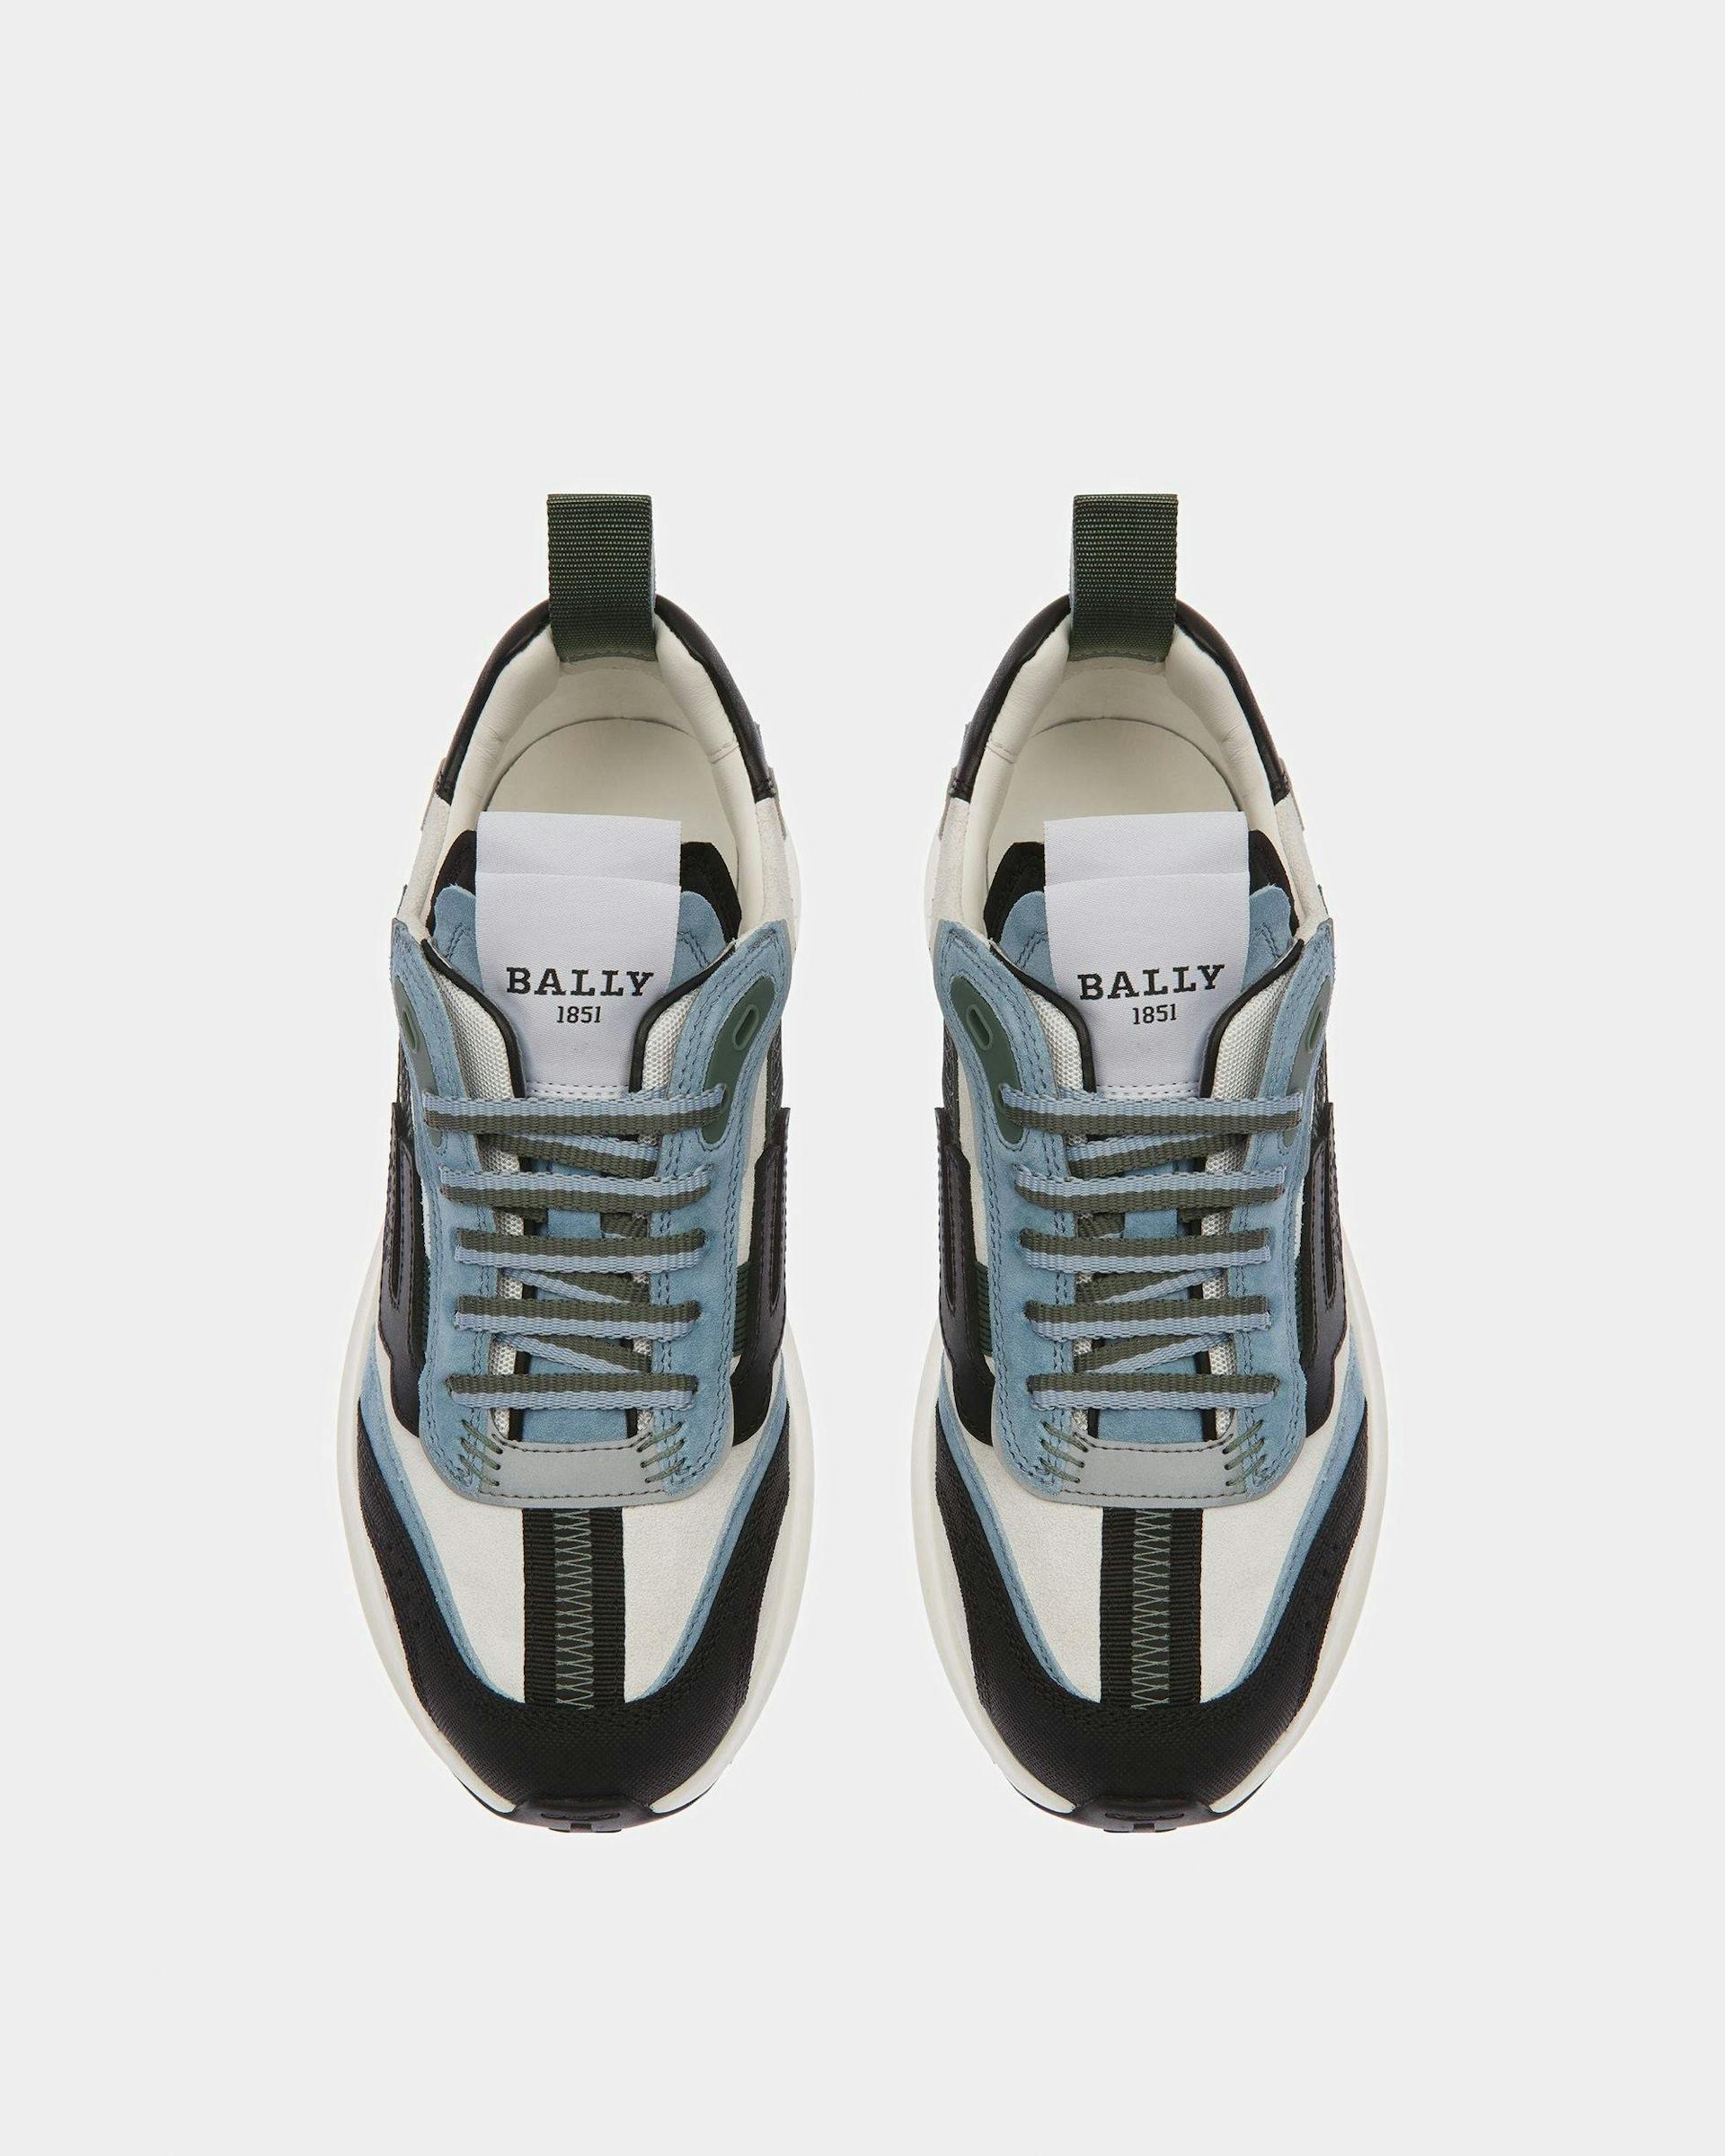 Darky Sneaker In Pelle Nera, Azzurra E Bianco Cipria - Donna - Bally - 02